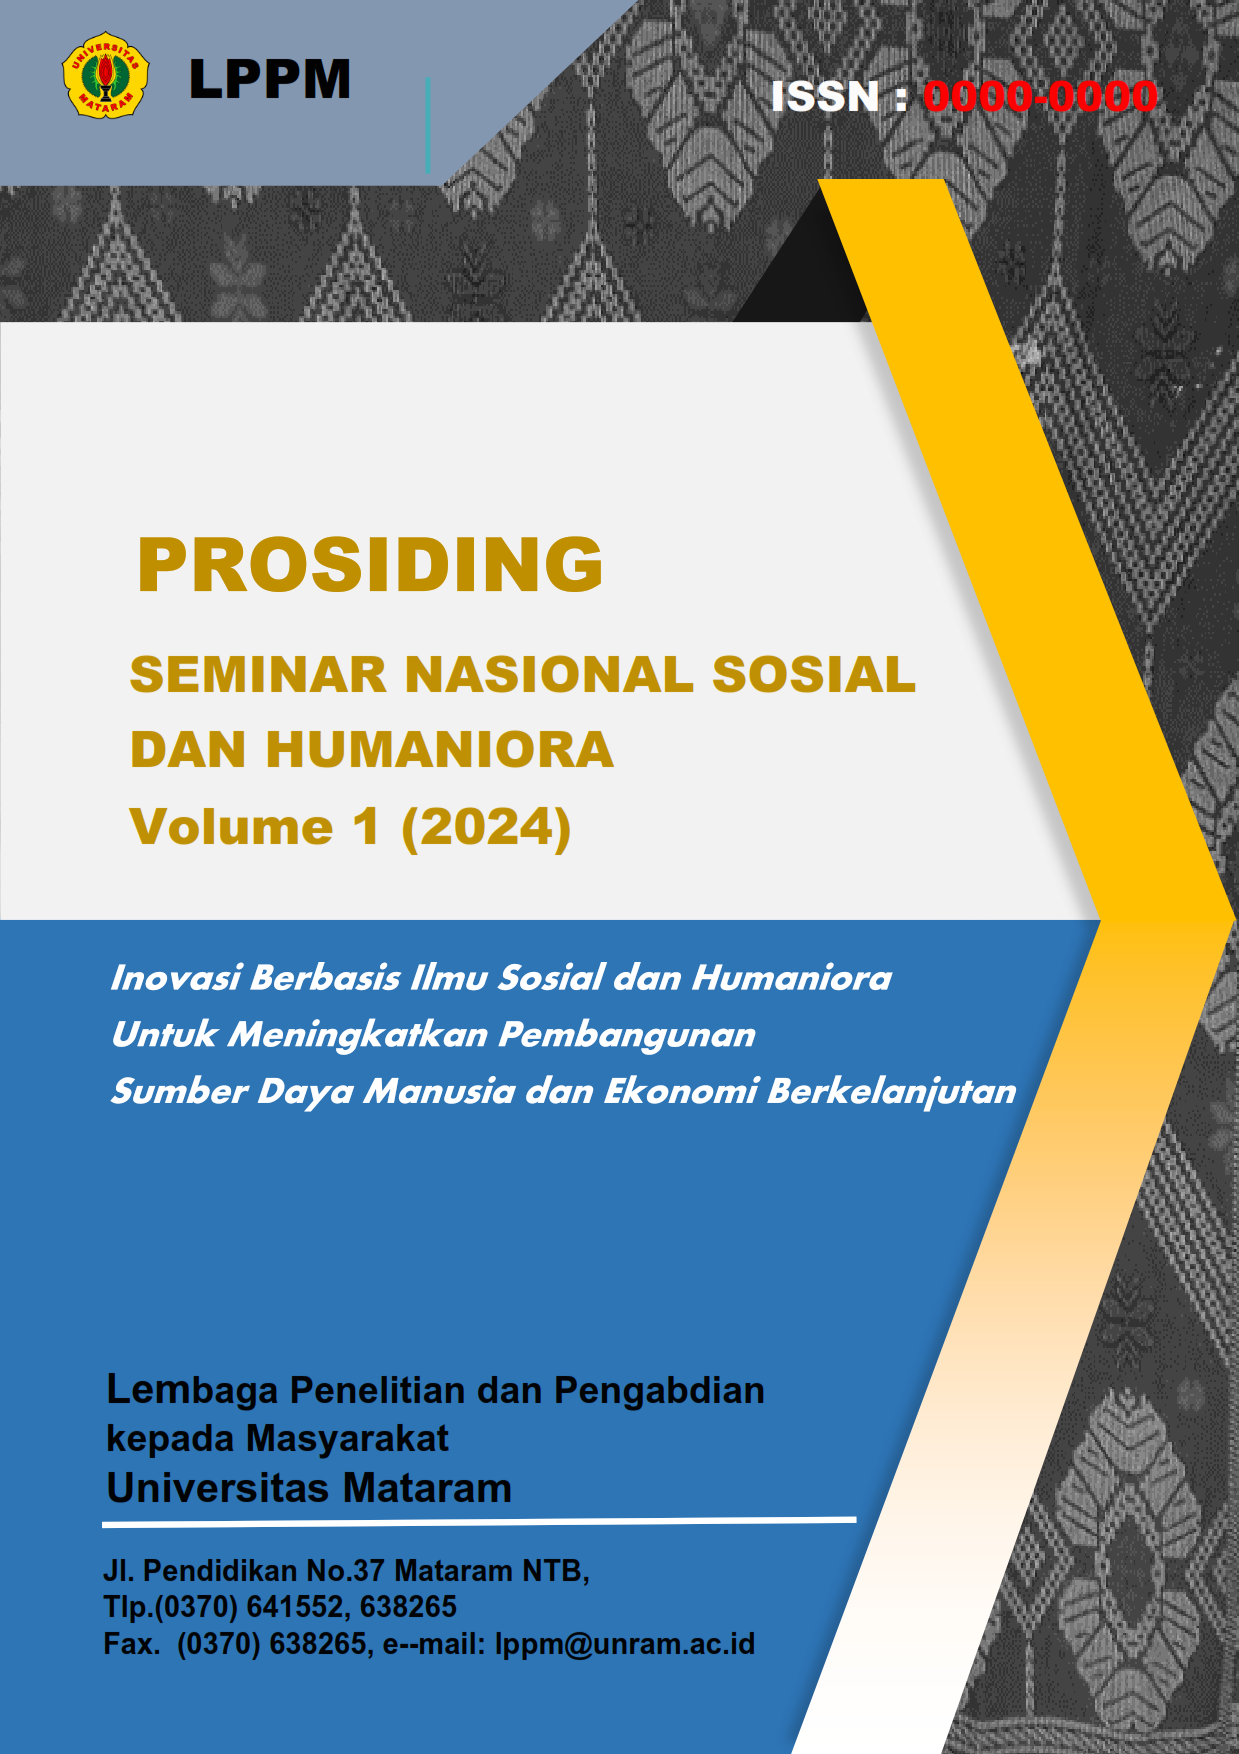 					View Vol. 1 (2024): Prosiding Seminar Nasional Sosial dan Humaniora
				